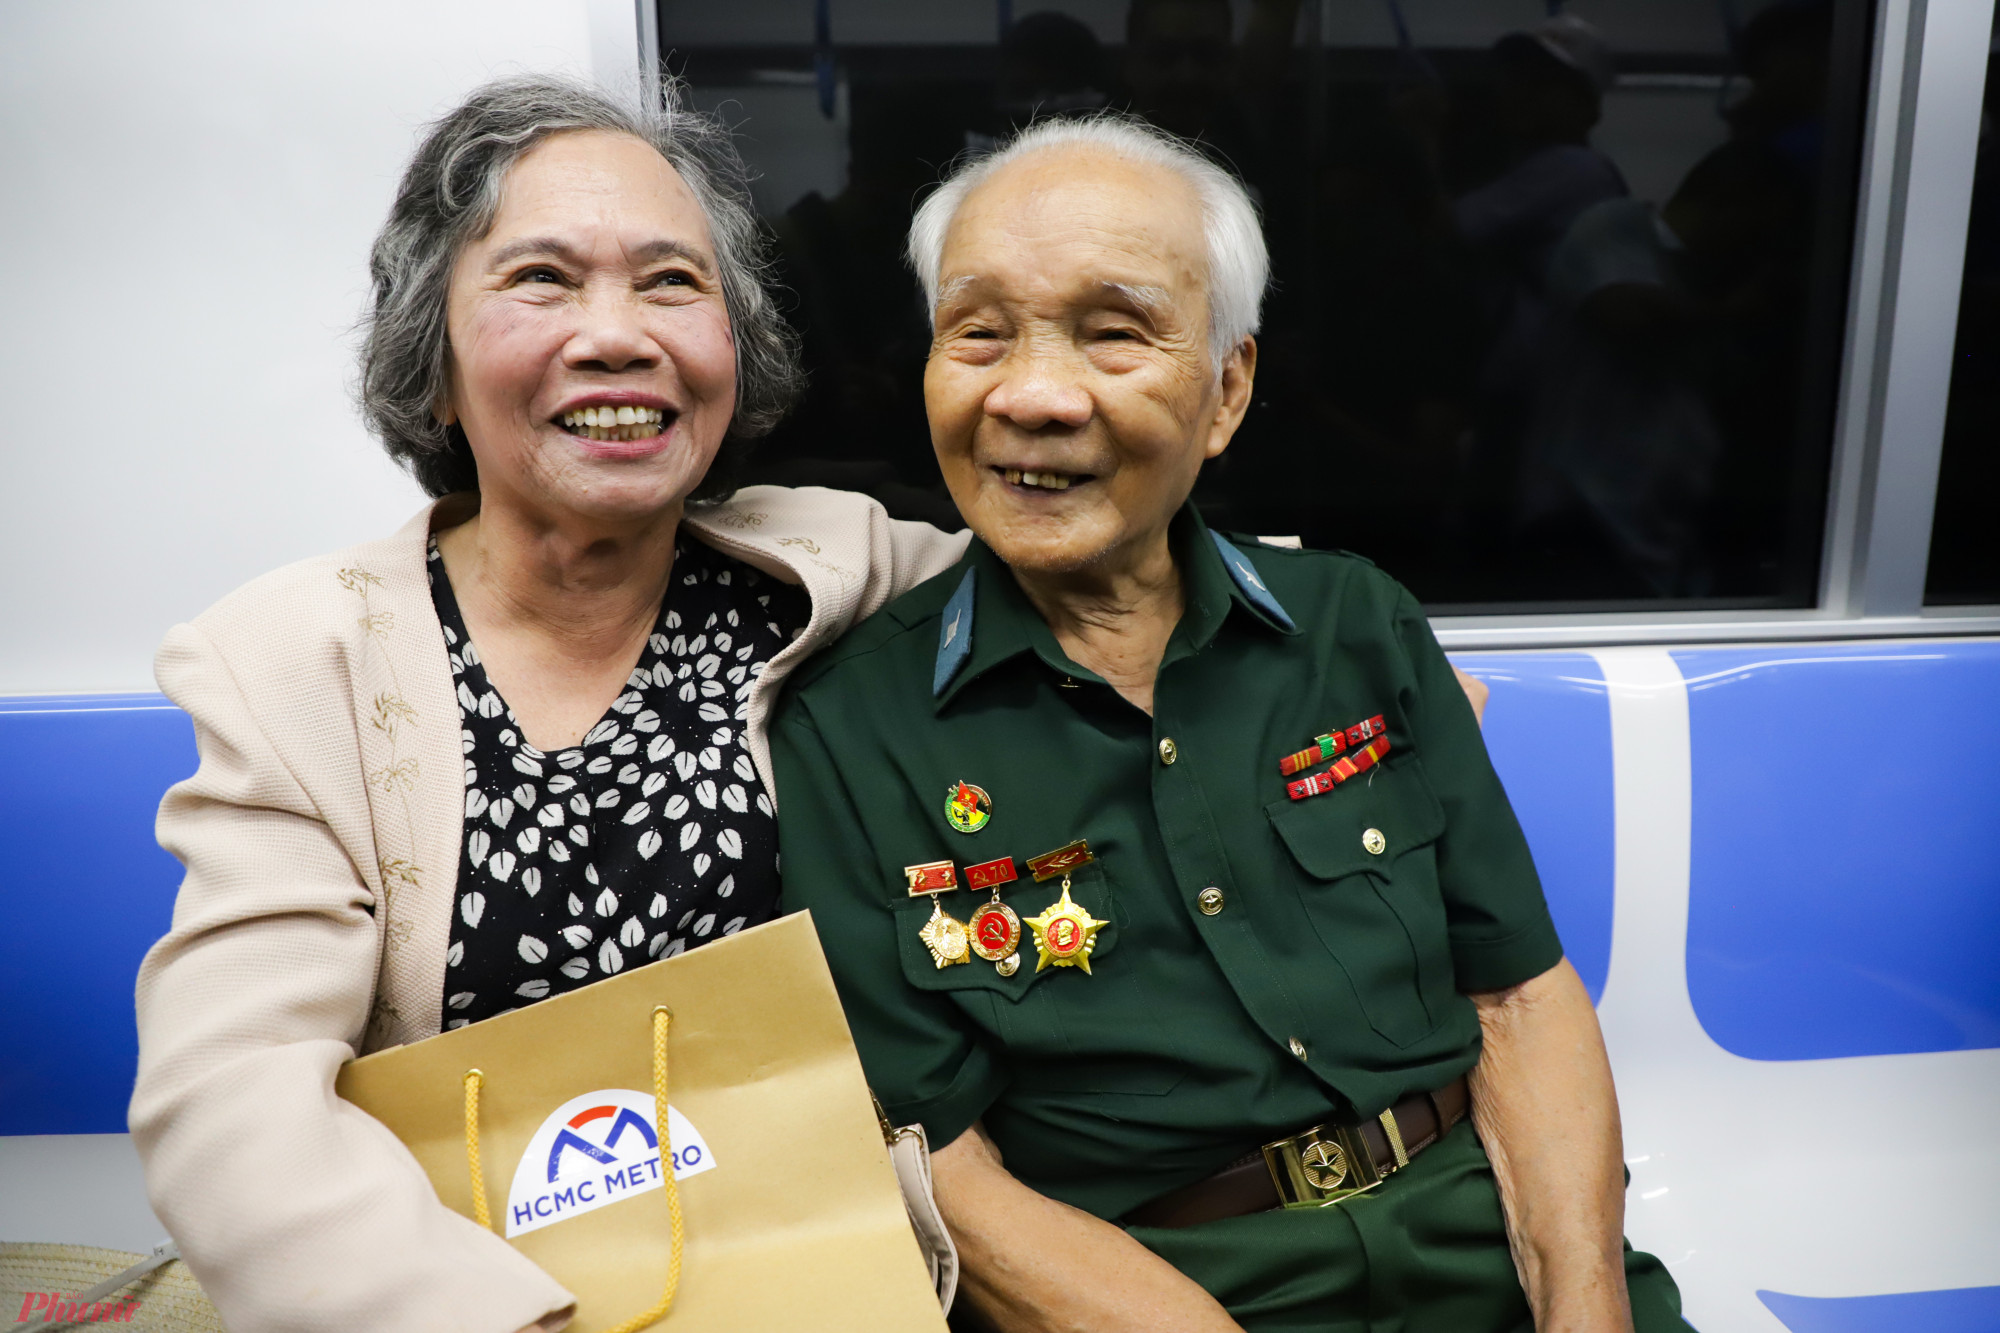 Ông Dương Chí Kỳ (90 tuổi) cùng vợ trải nghiệm chuyến tàu metro số 1. Ông Kỳ cho biết, đã đi khắp nơi, ngồi tàu khắp các nước trên thế giới nhưng không đâu cảm xúc bằng ngồi tàu metro số 1 ở TPHCM. 